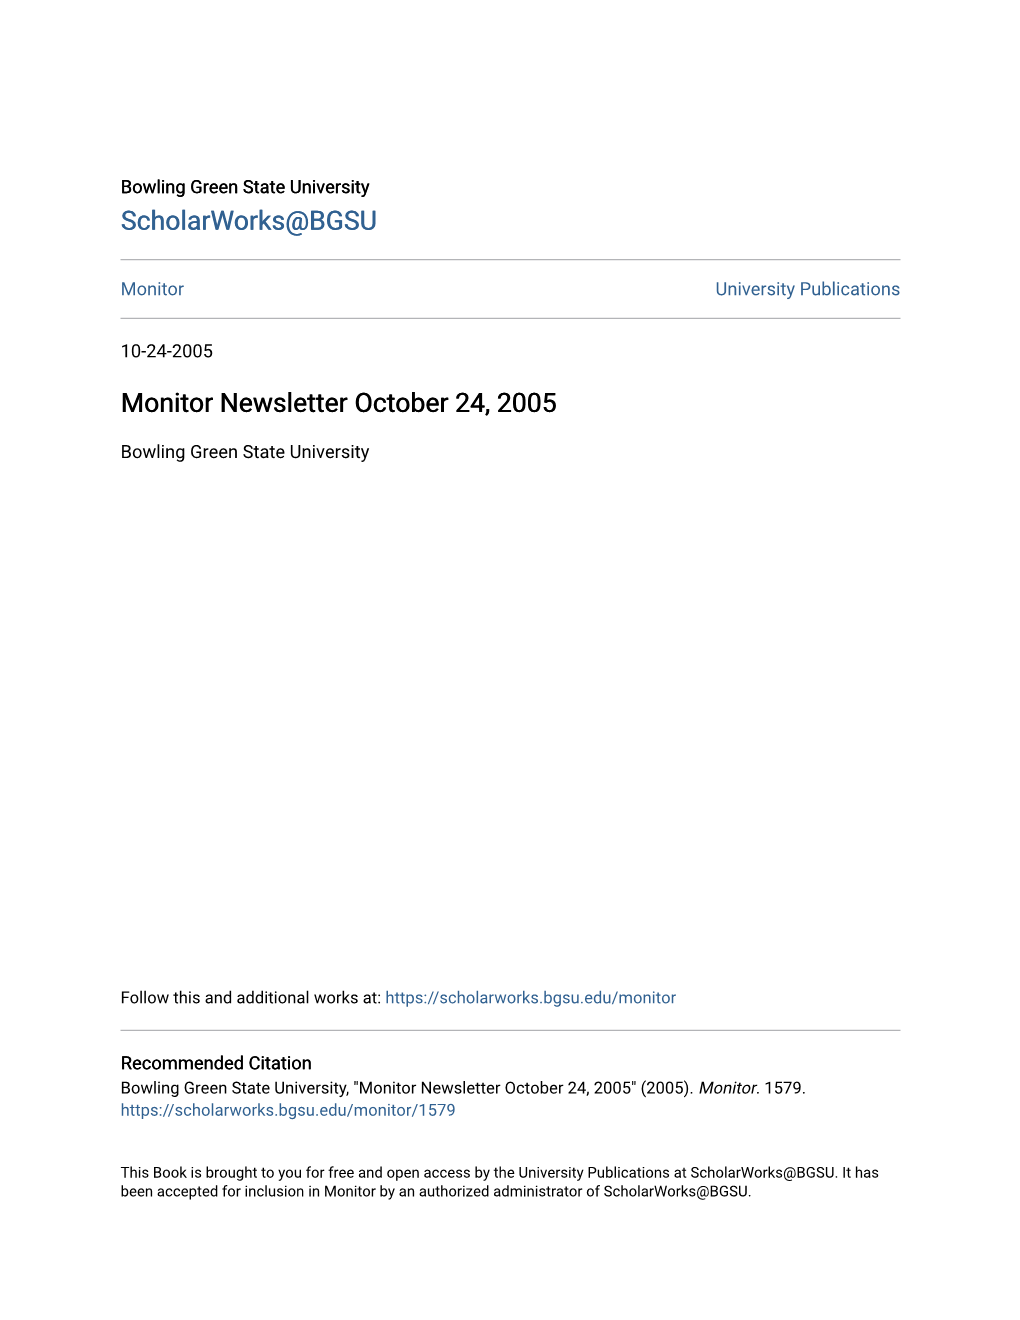 Monitor Newsletter October 24, 2005